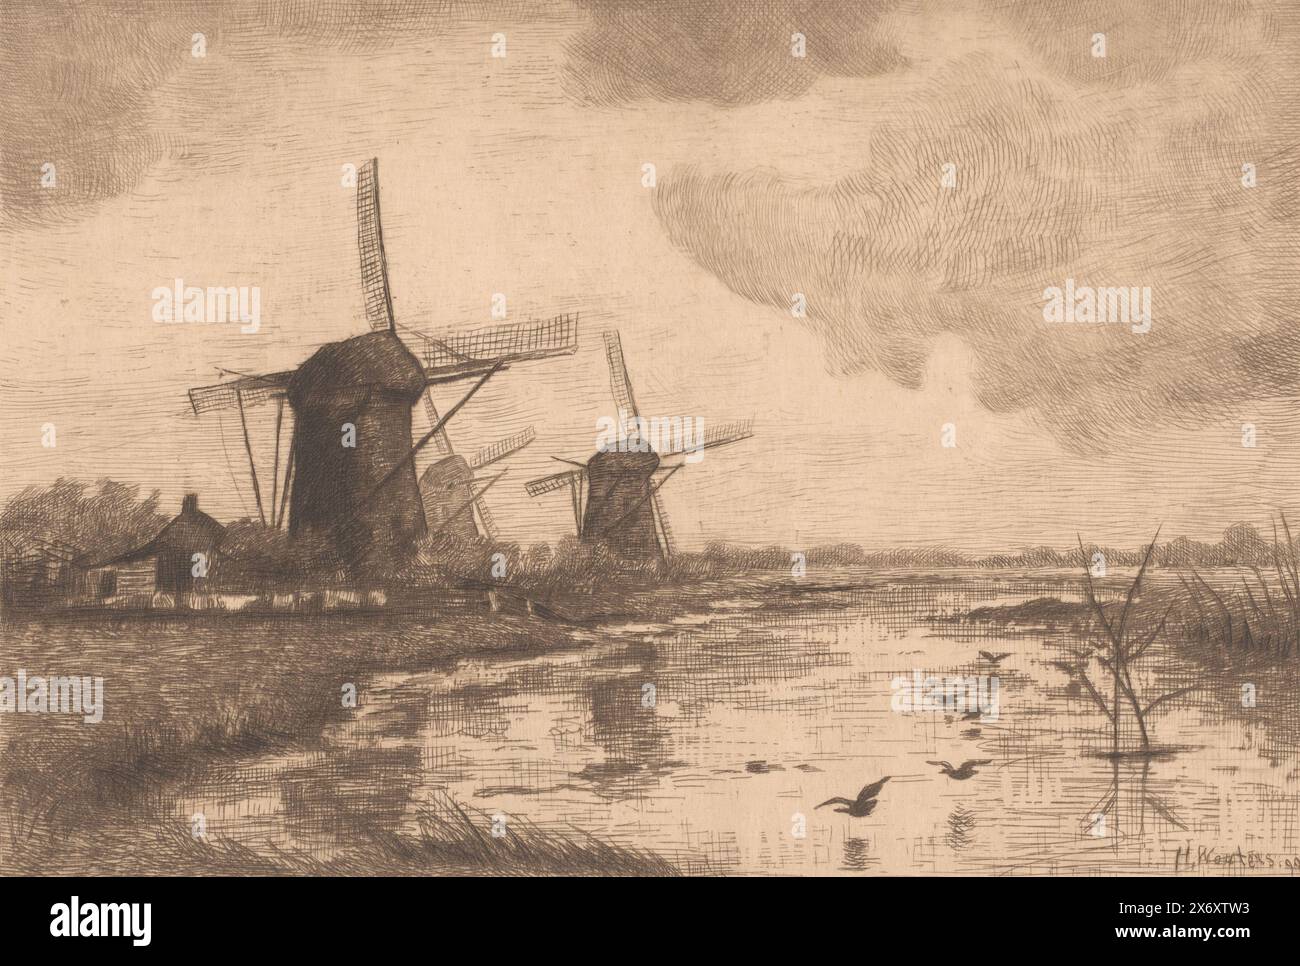 Trois moulins dans un paysage aquatique, imprimerie, imprimeur : Henri Wouters, (mentionné sur l'objet), 1890, papier, gravure, pointe sèche, hauteur, 237 mm × largeur, 298 mm Banque D'Images